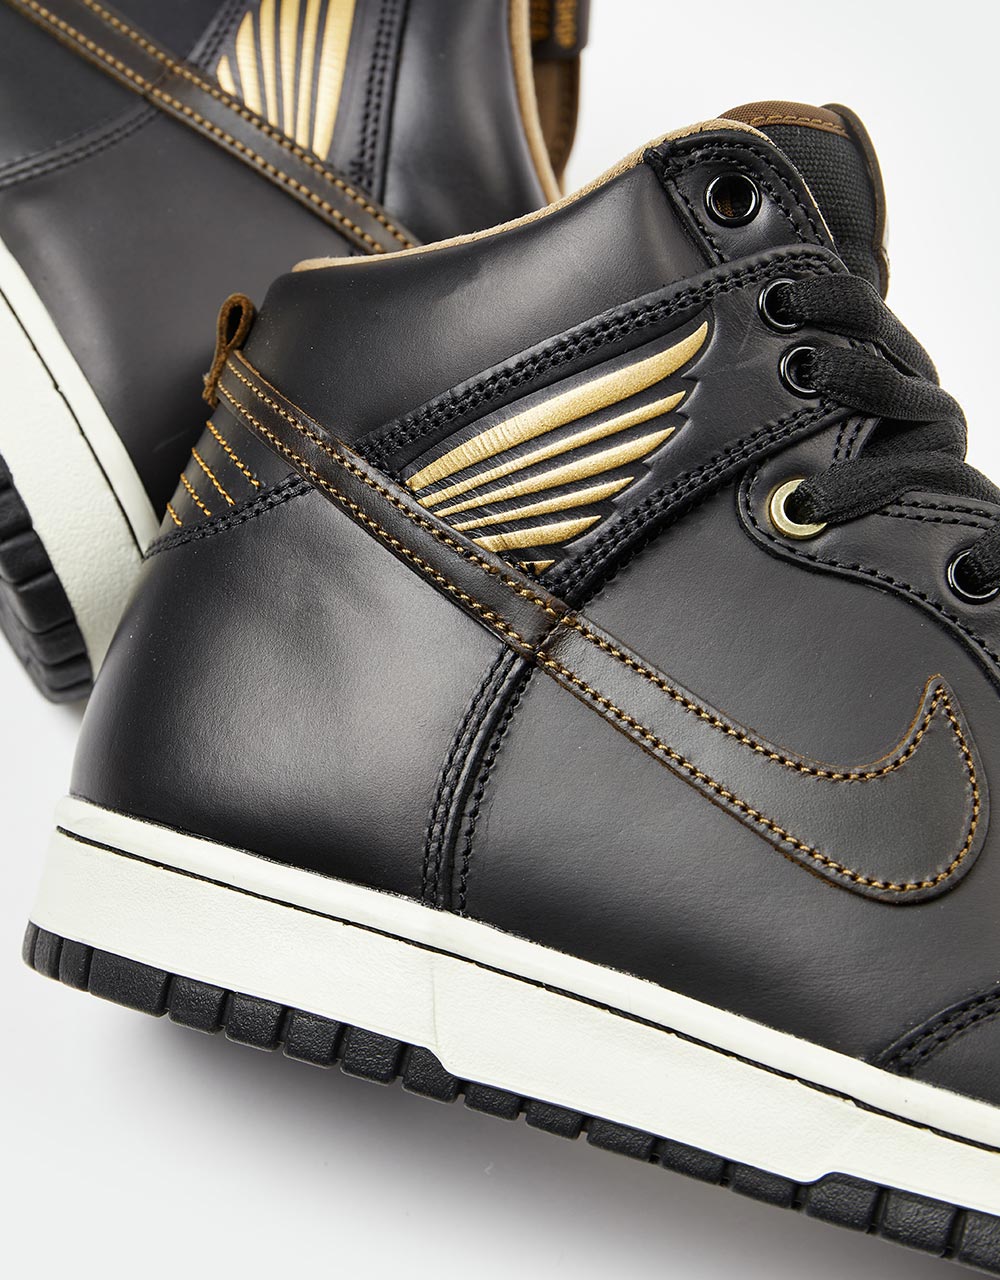 Nike SB 'Pawnshop' Dunk High OG QS Skate Shoes - Black/Black 